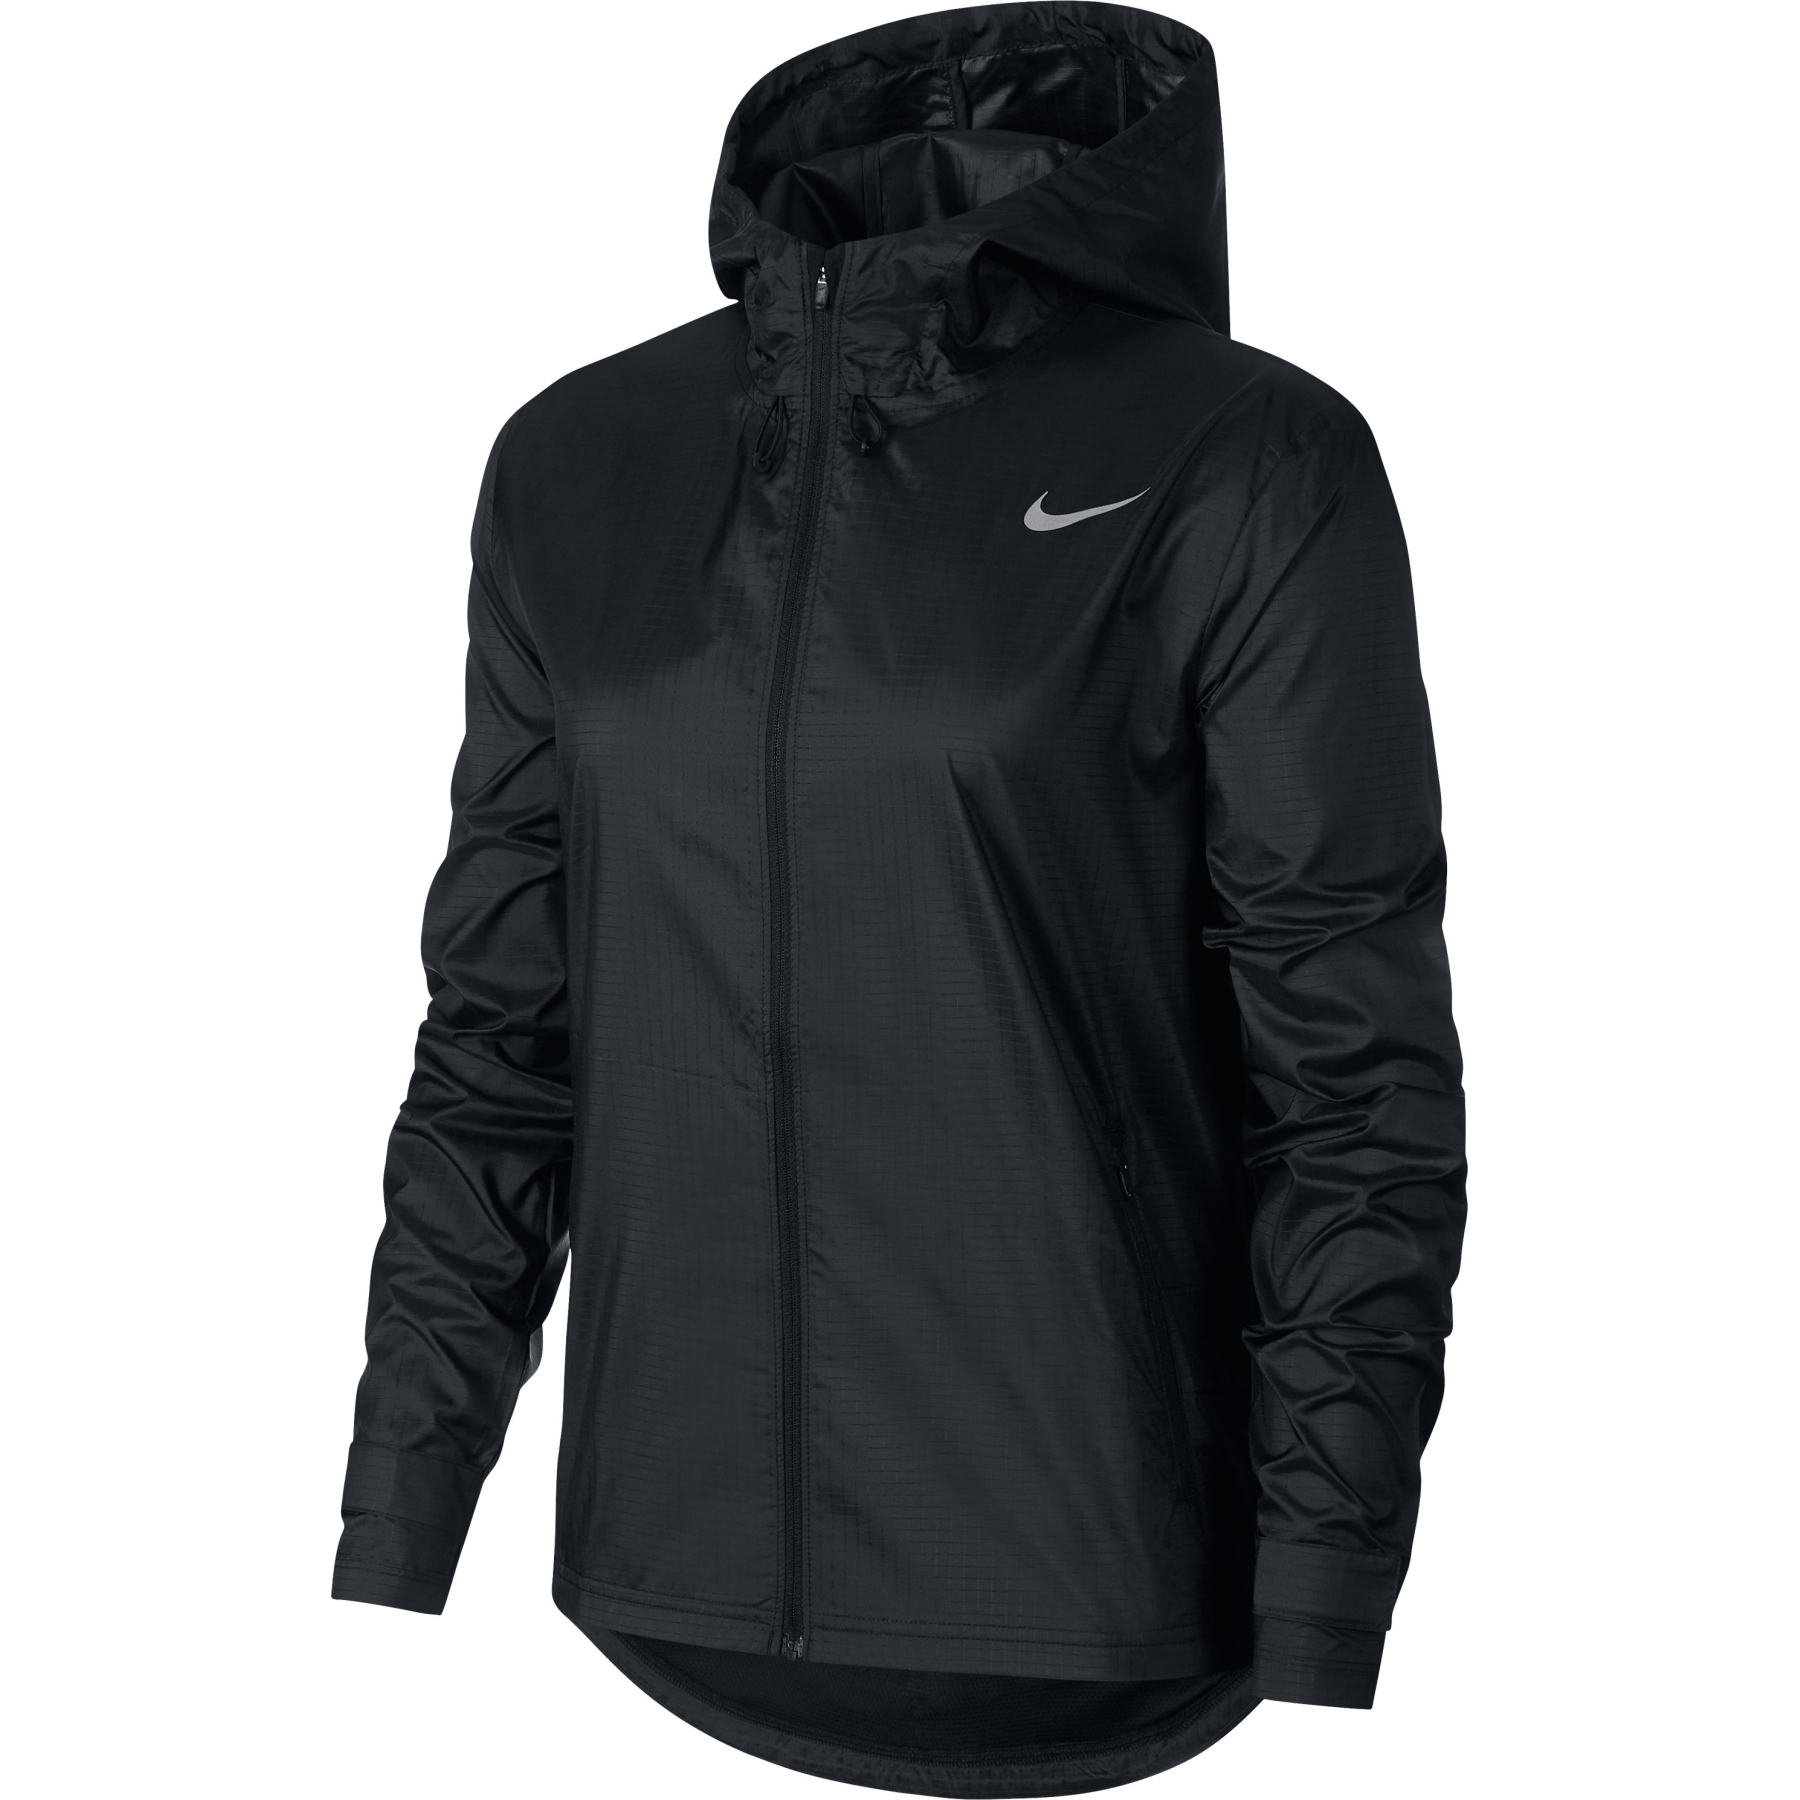 Productfoto van Nike Essential Hardloopjas Dames - black/reflective silver CU3217-010